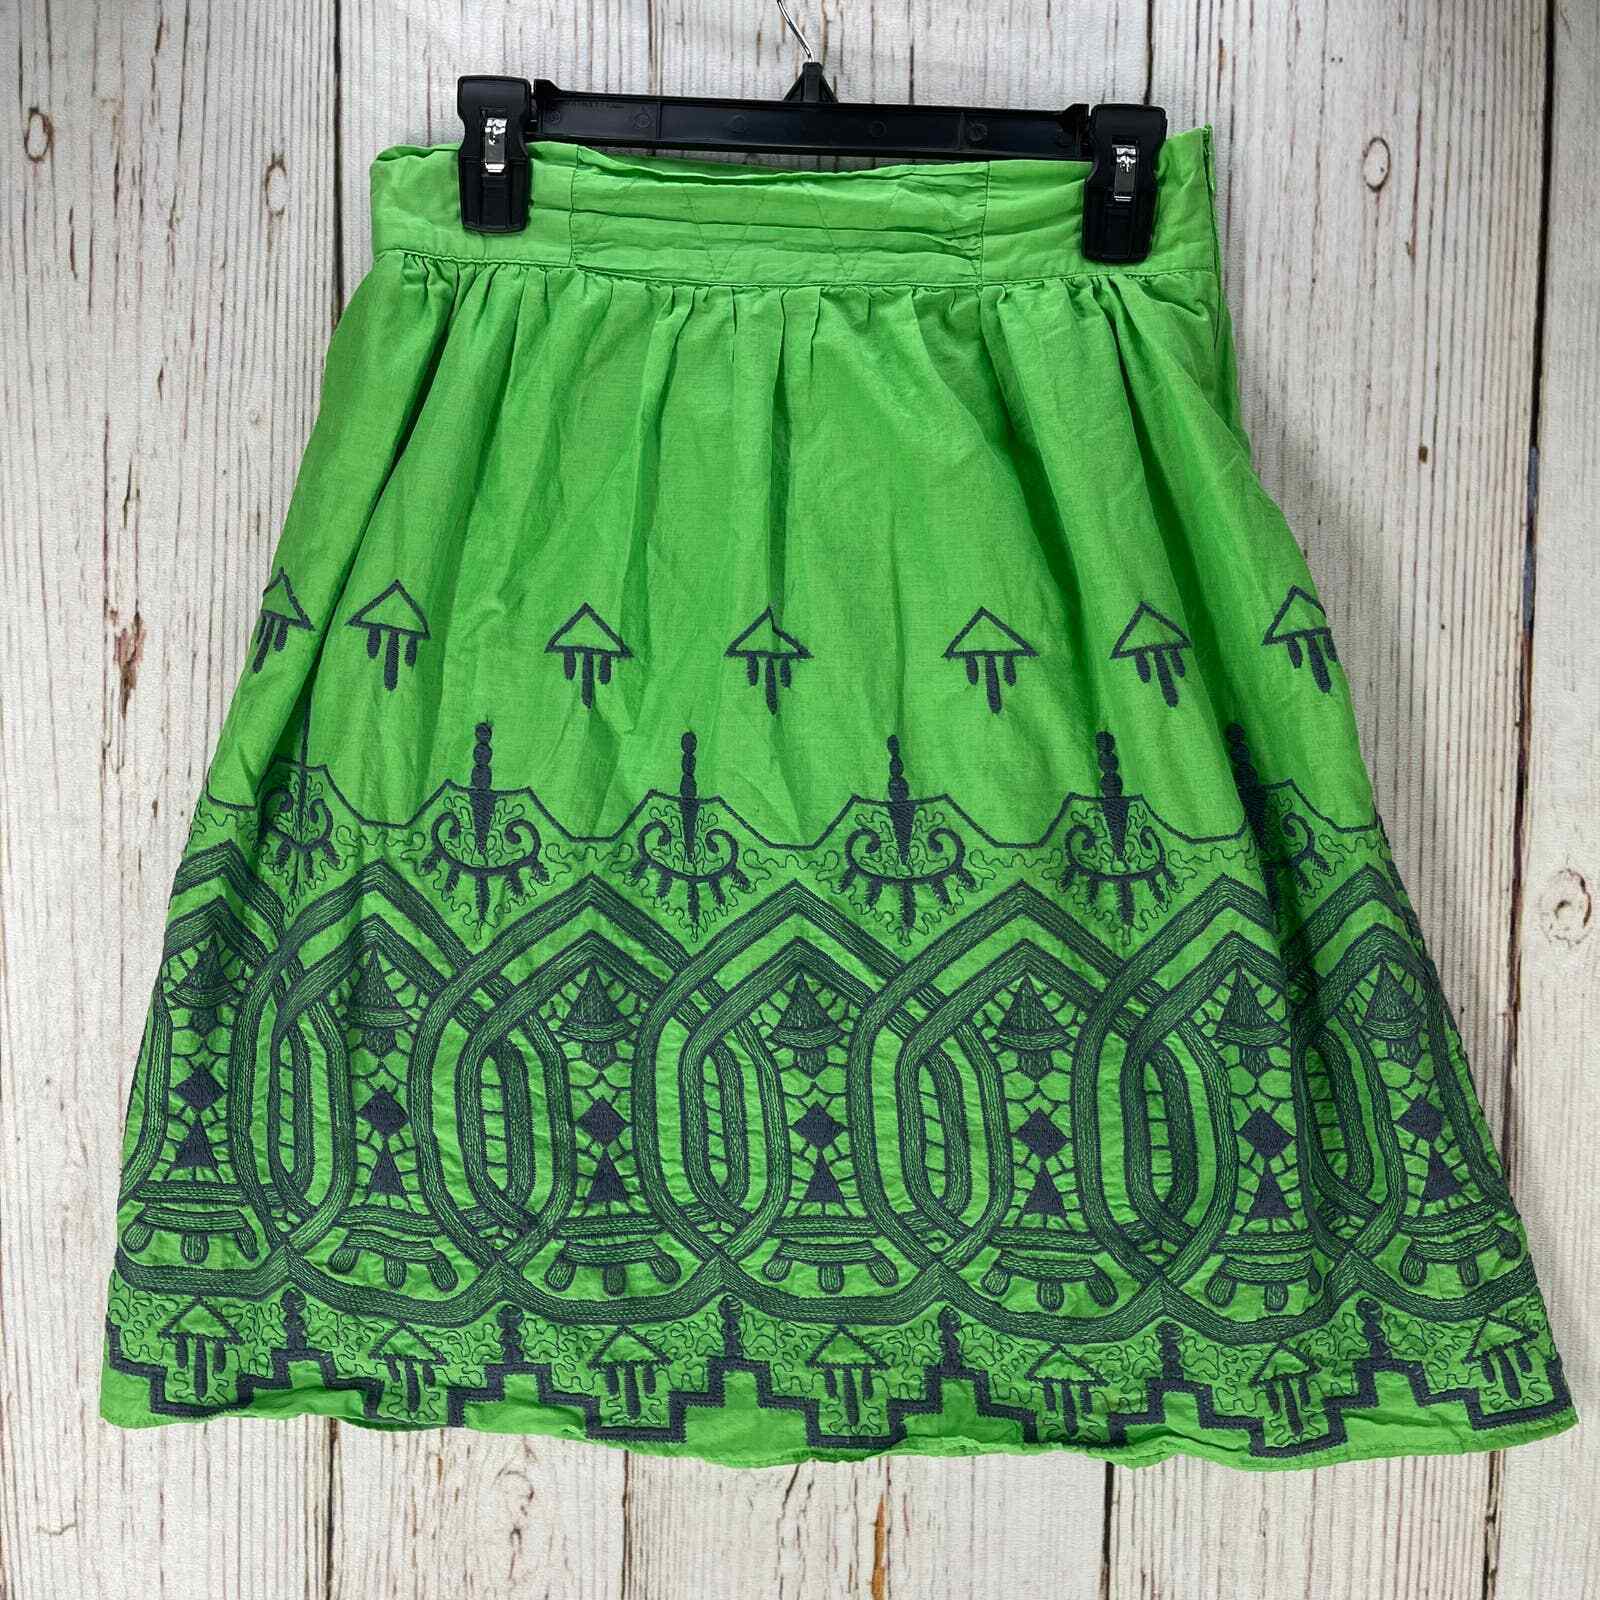 Down East Basics Skirt Women Medium Green Gray Embroidered Bohemian Boho |  eBay